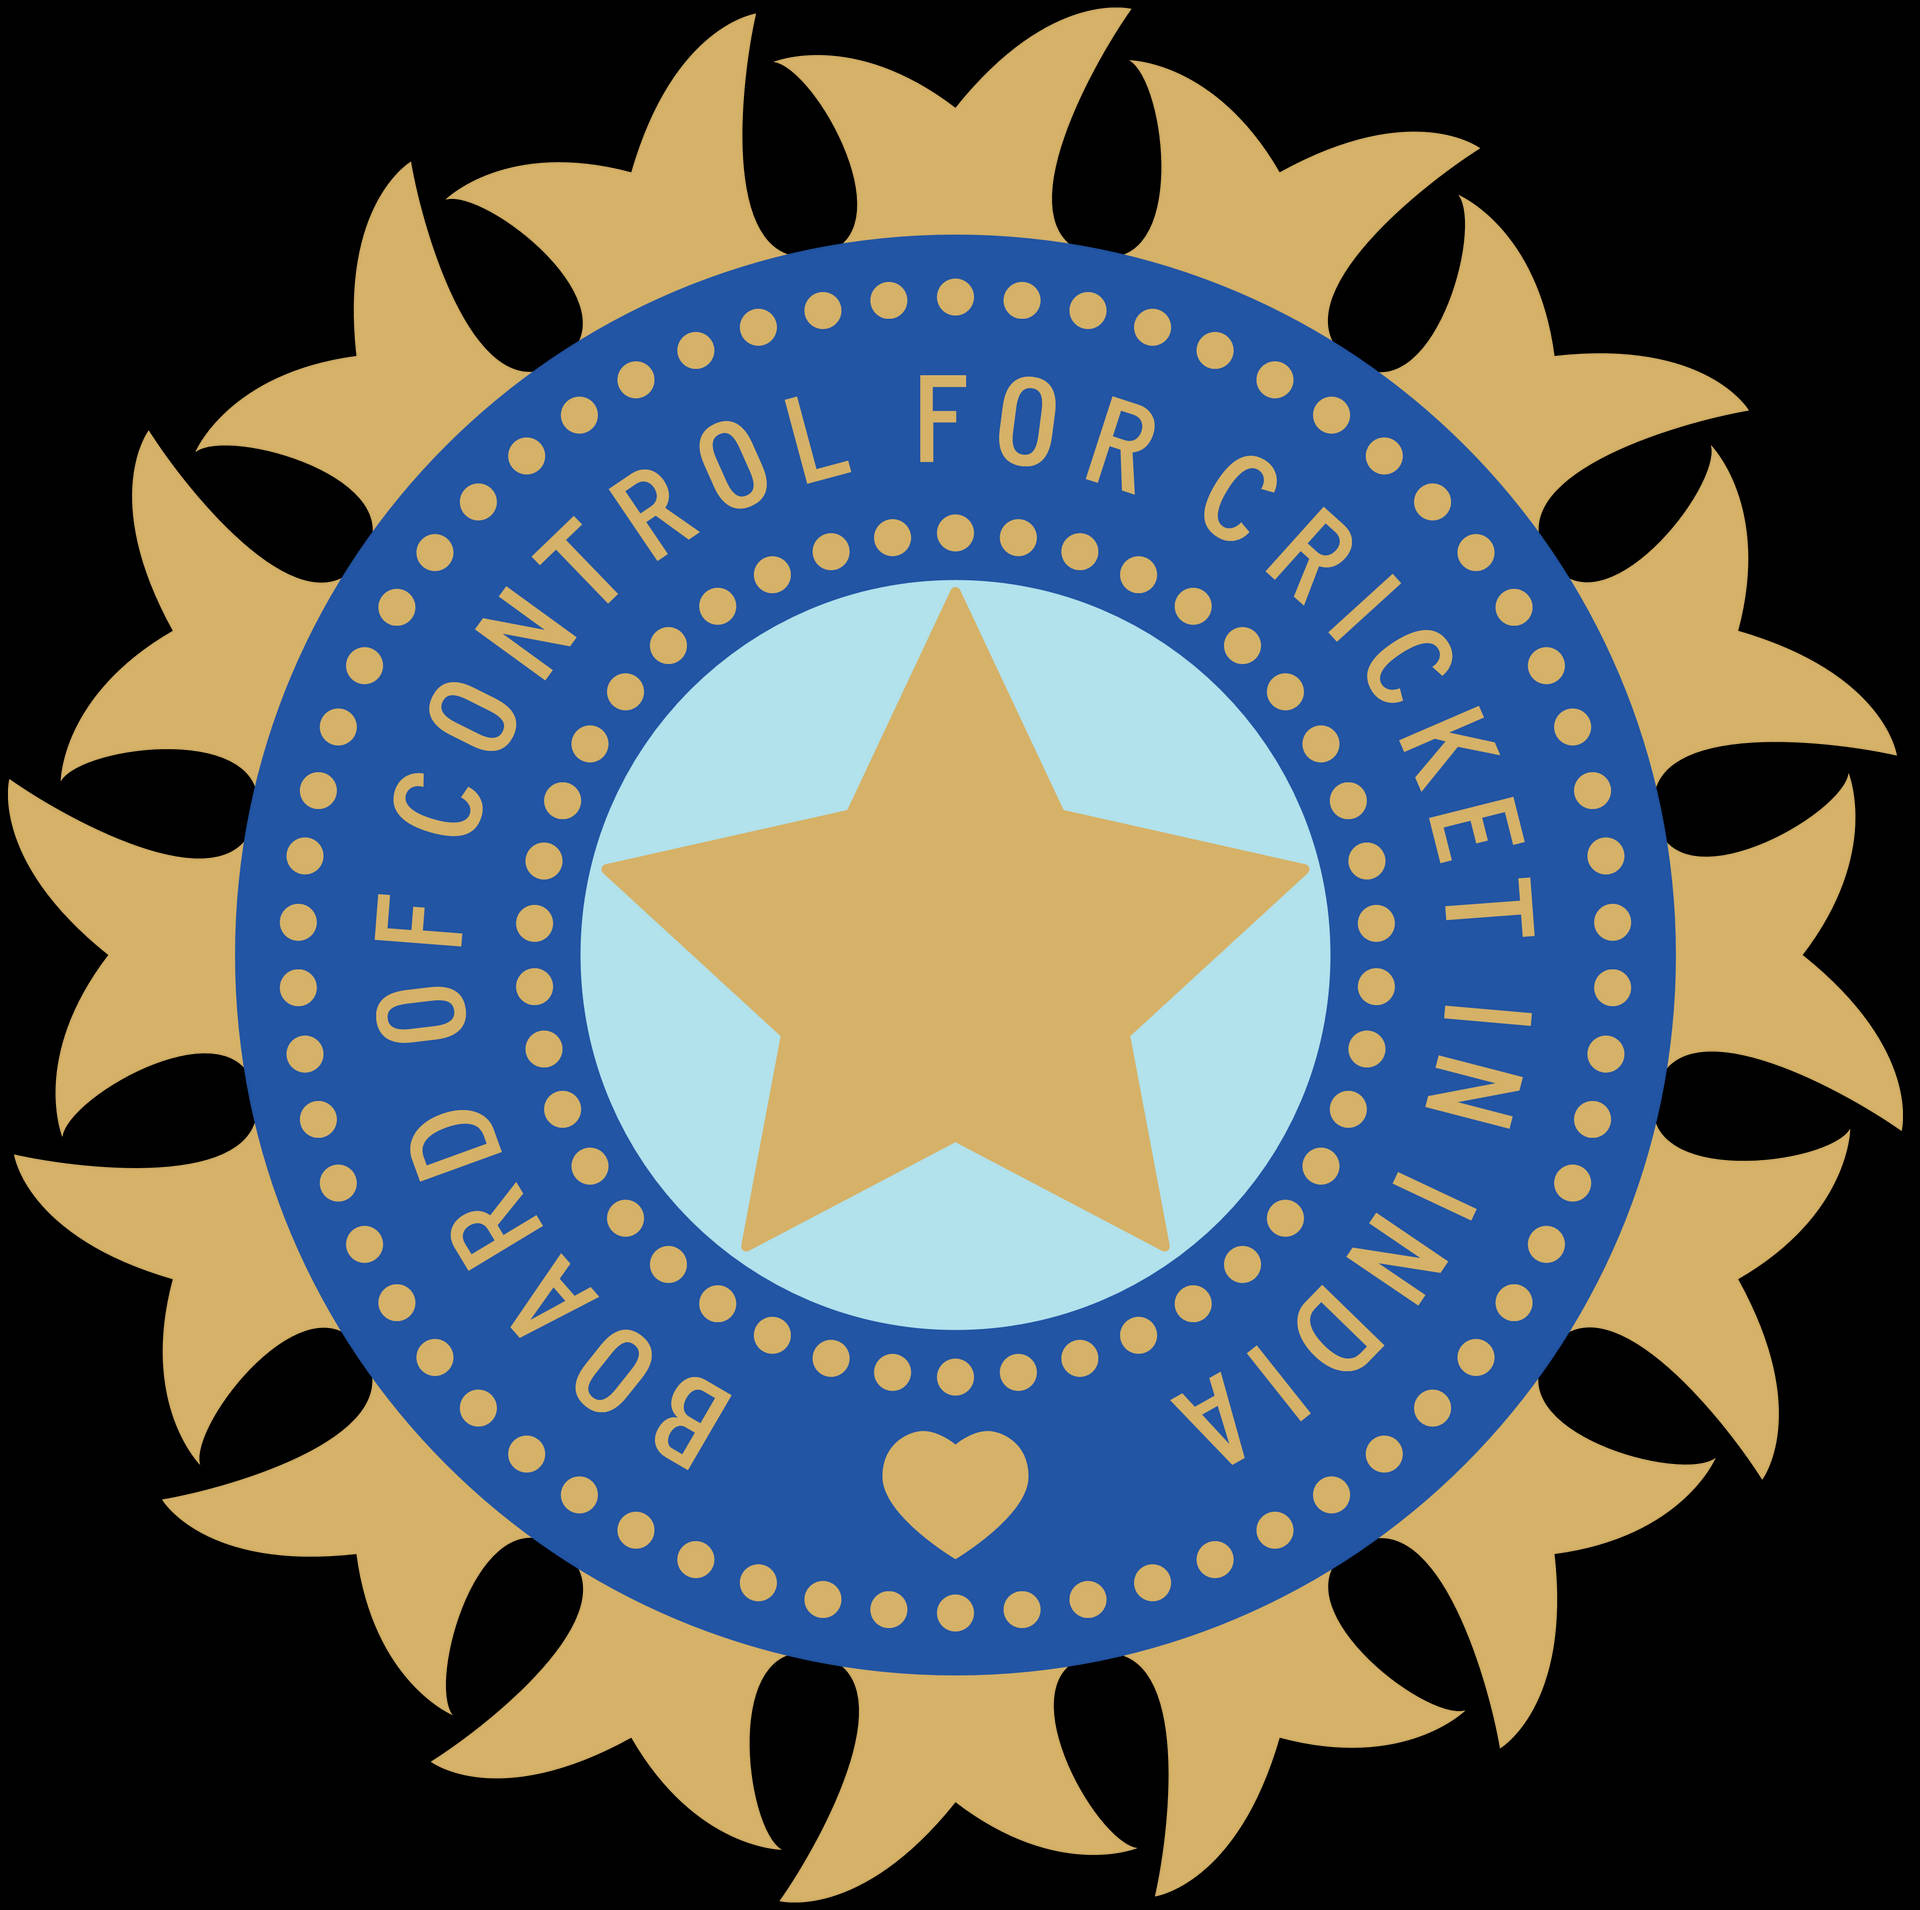 Download Indian Cricket Team Logo BCCI Wallpaper | Wallpapers.com